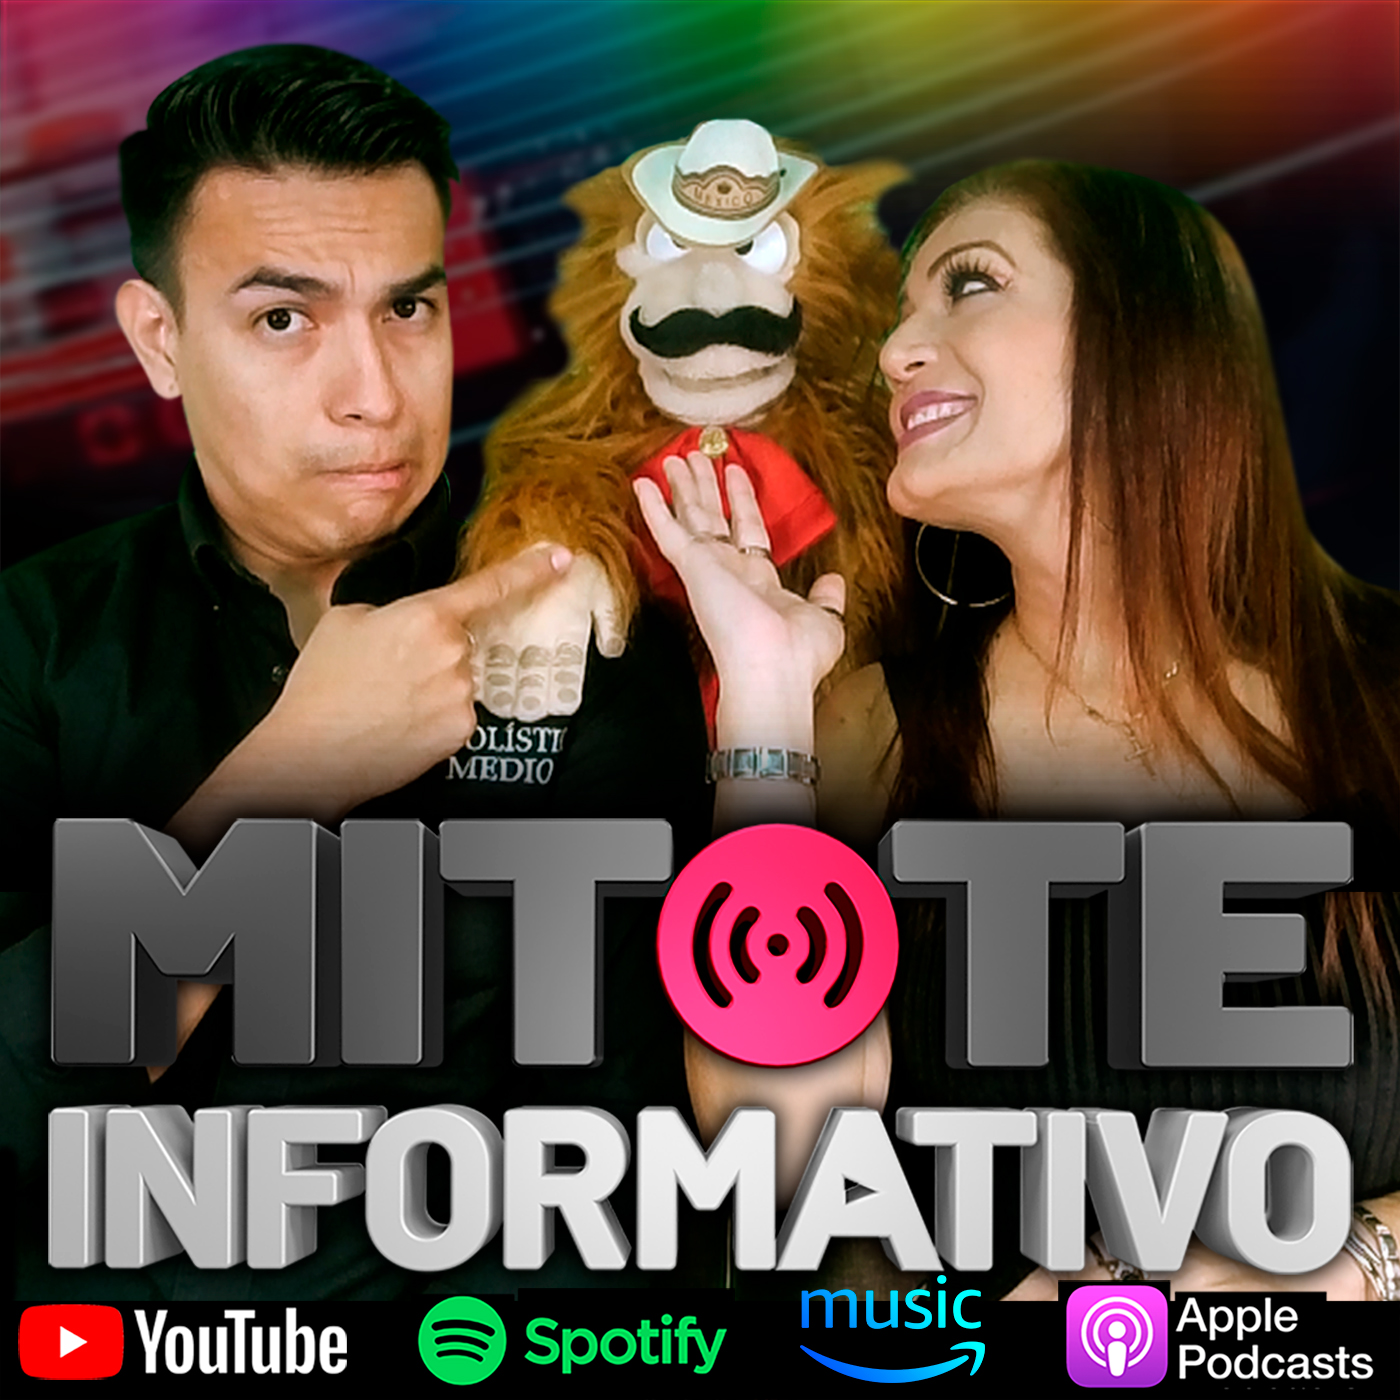 Artwork for podcast Mitote Informativo